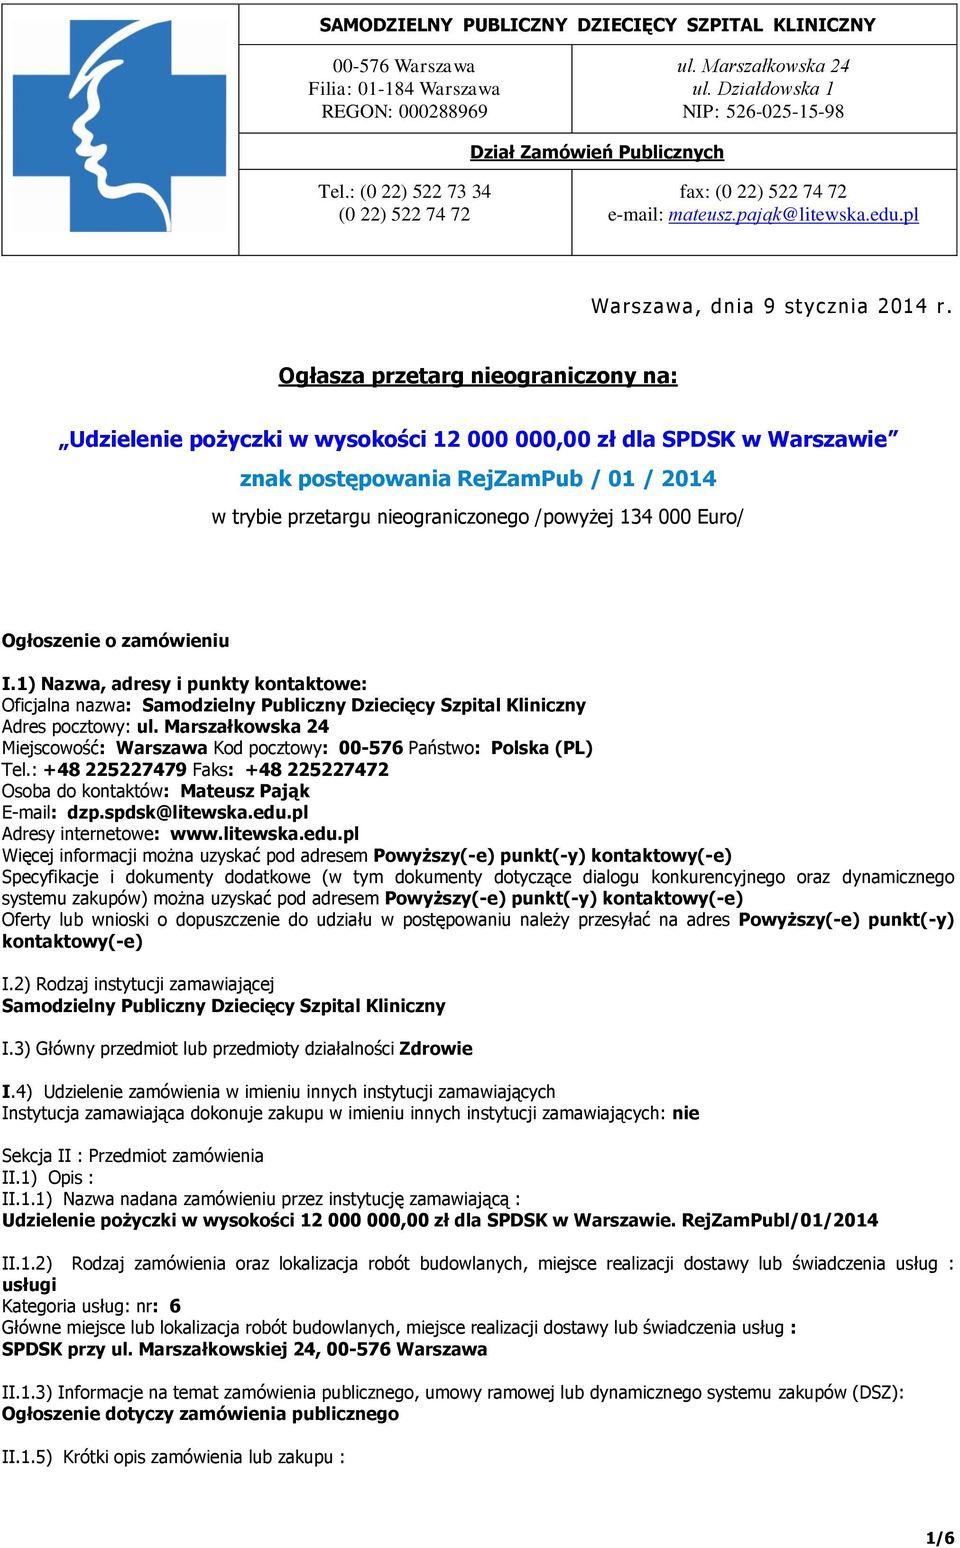 Ogłasza przetarg nieograniczony na: Udzielenie pożyczki w wysokości 12 000 000,00 zł dla SPDSK w Warszawie znak postępowania RejZamPub / 01 / 2014 w trybie przetargu nieograniczonego /powyżej 134 000